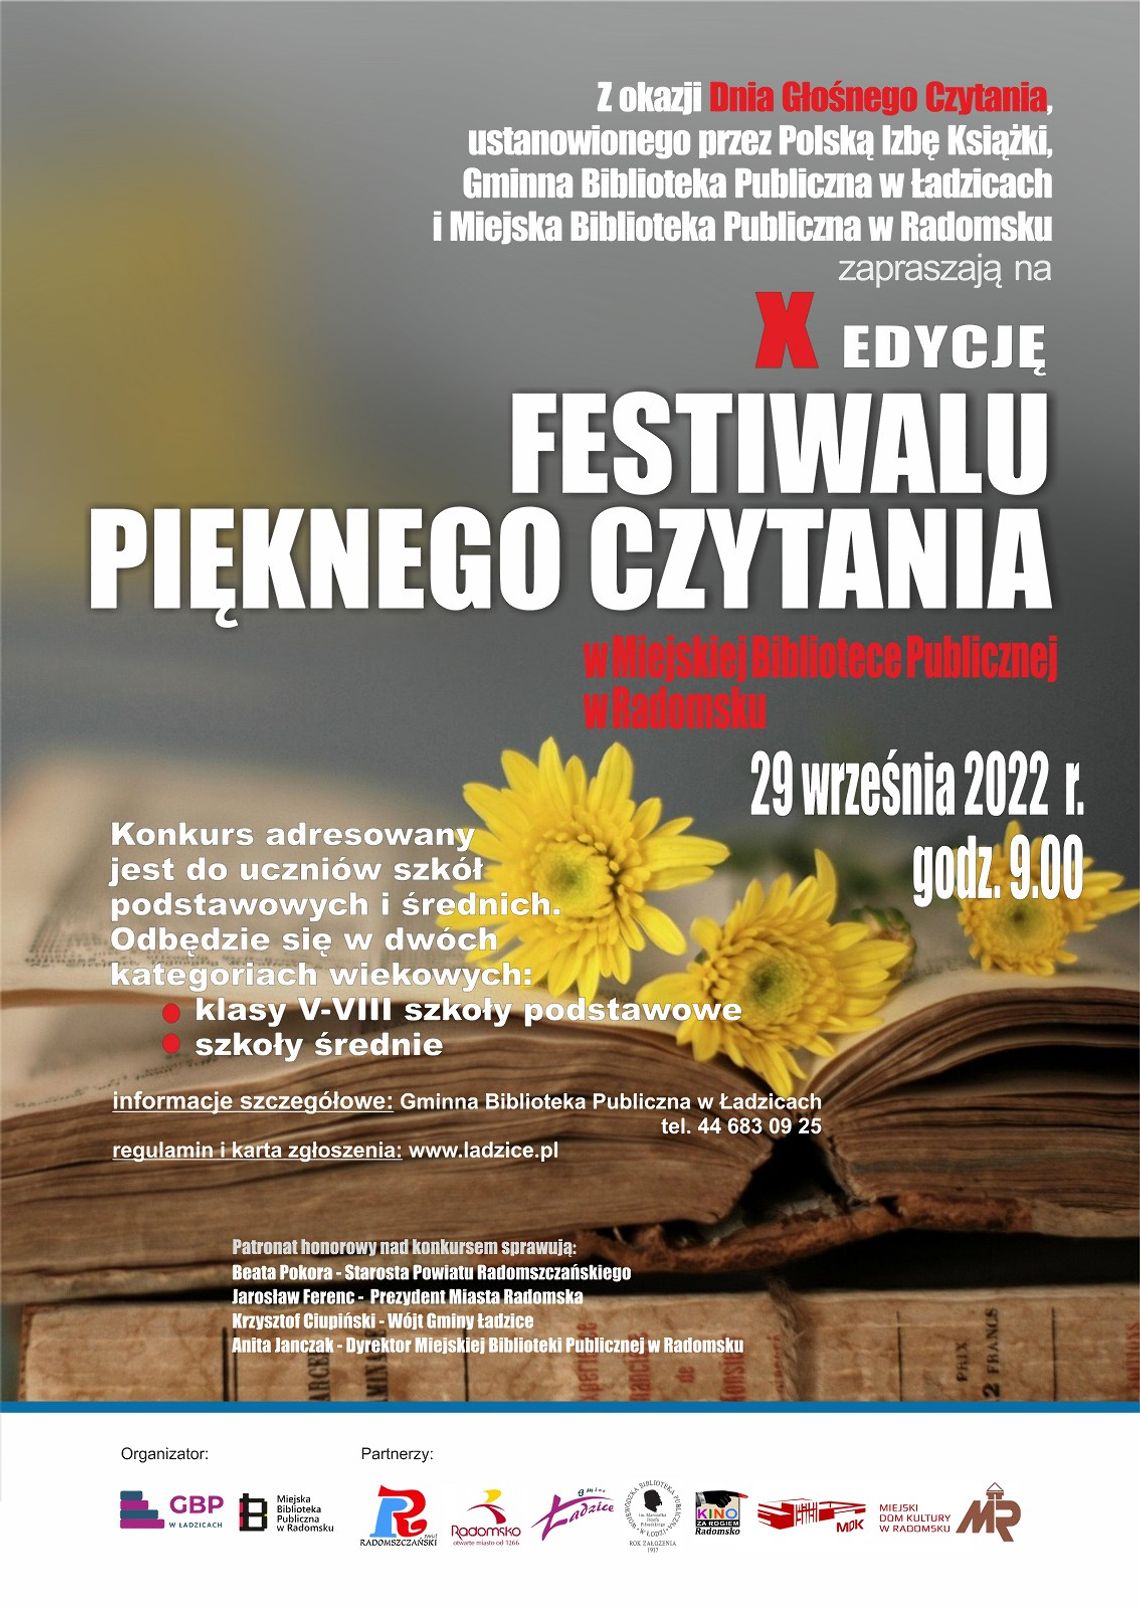 Zapraszamy do wzięcia udziału w Festiwalu Pięknego Czytania 2022